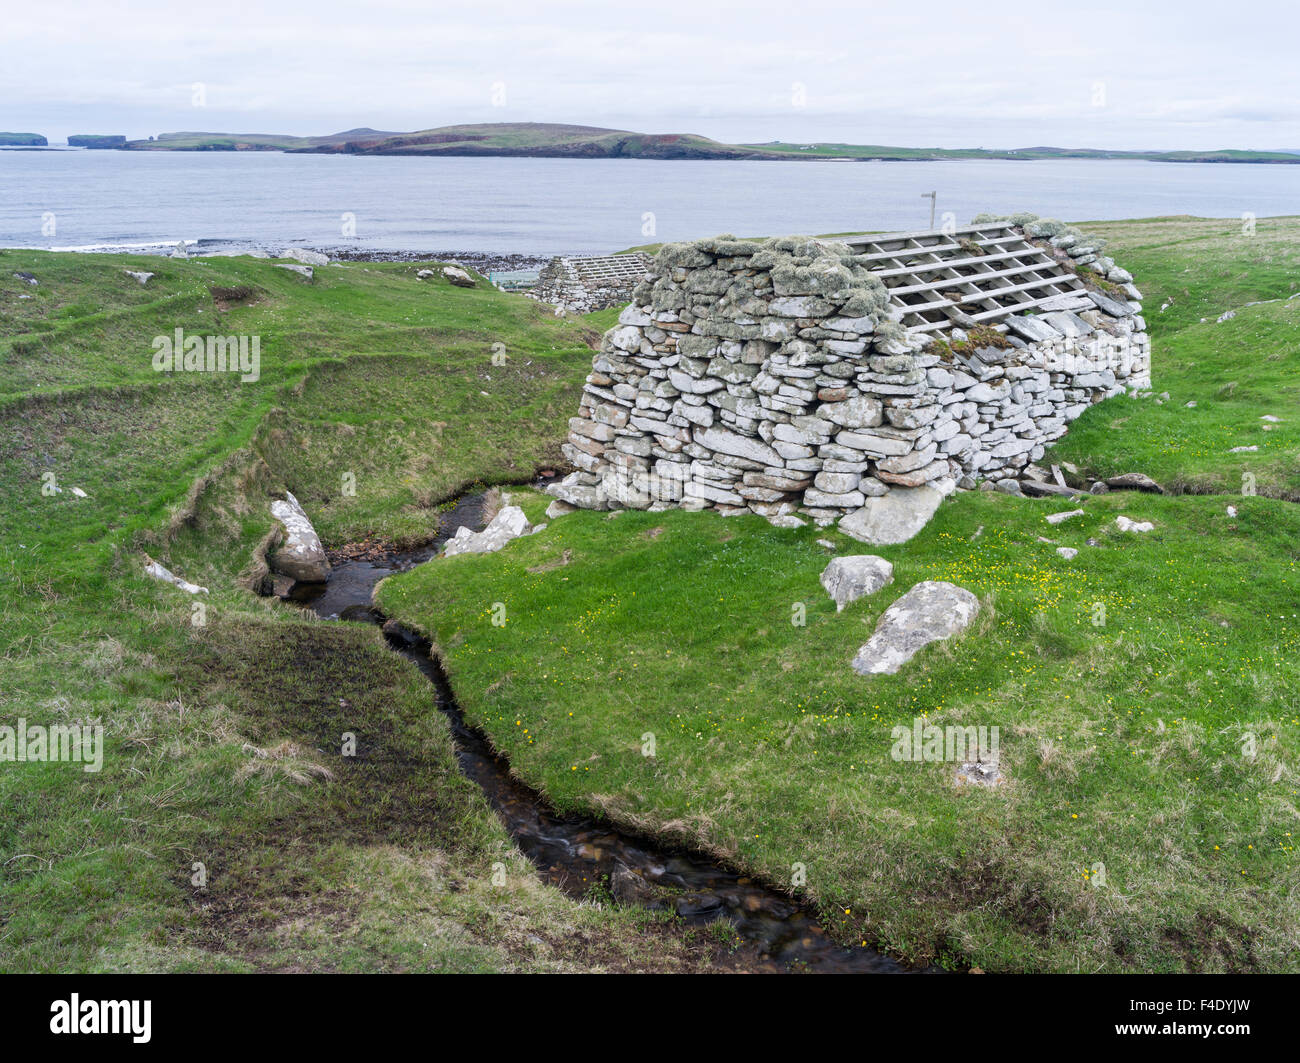 Les moulins à eau près de Huxter. Shetland, Ecosse, îles du Nord. Tailles disponibles (grand format) Banque D'Images